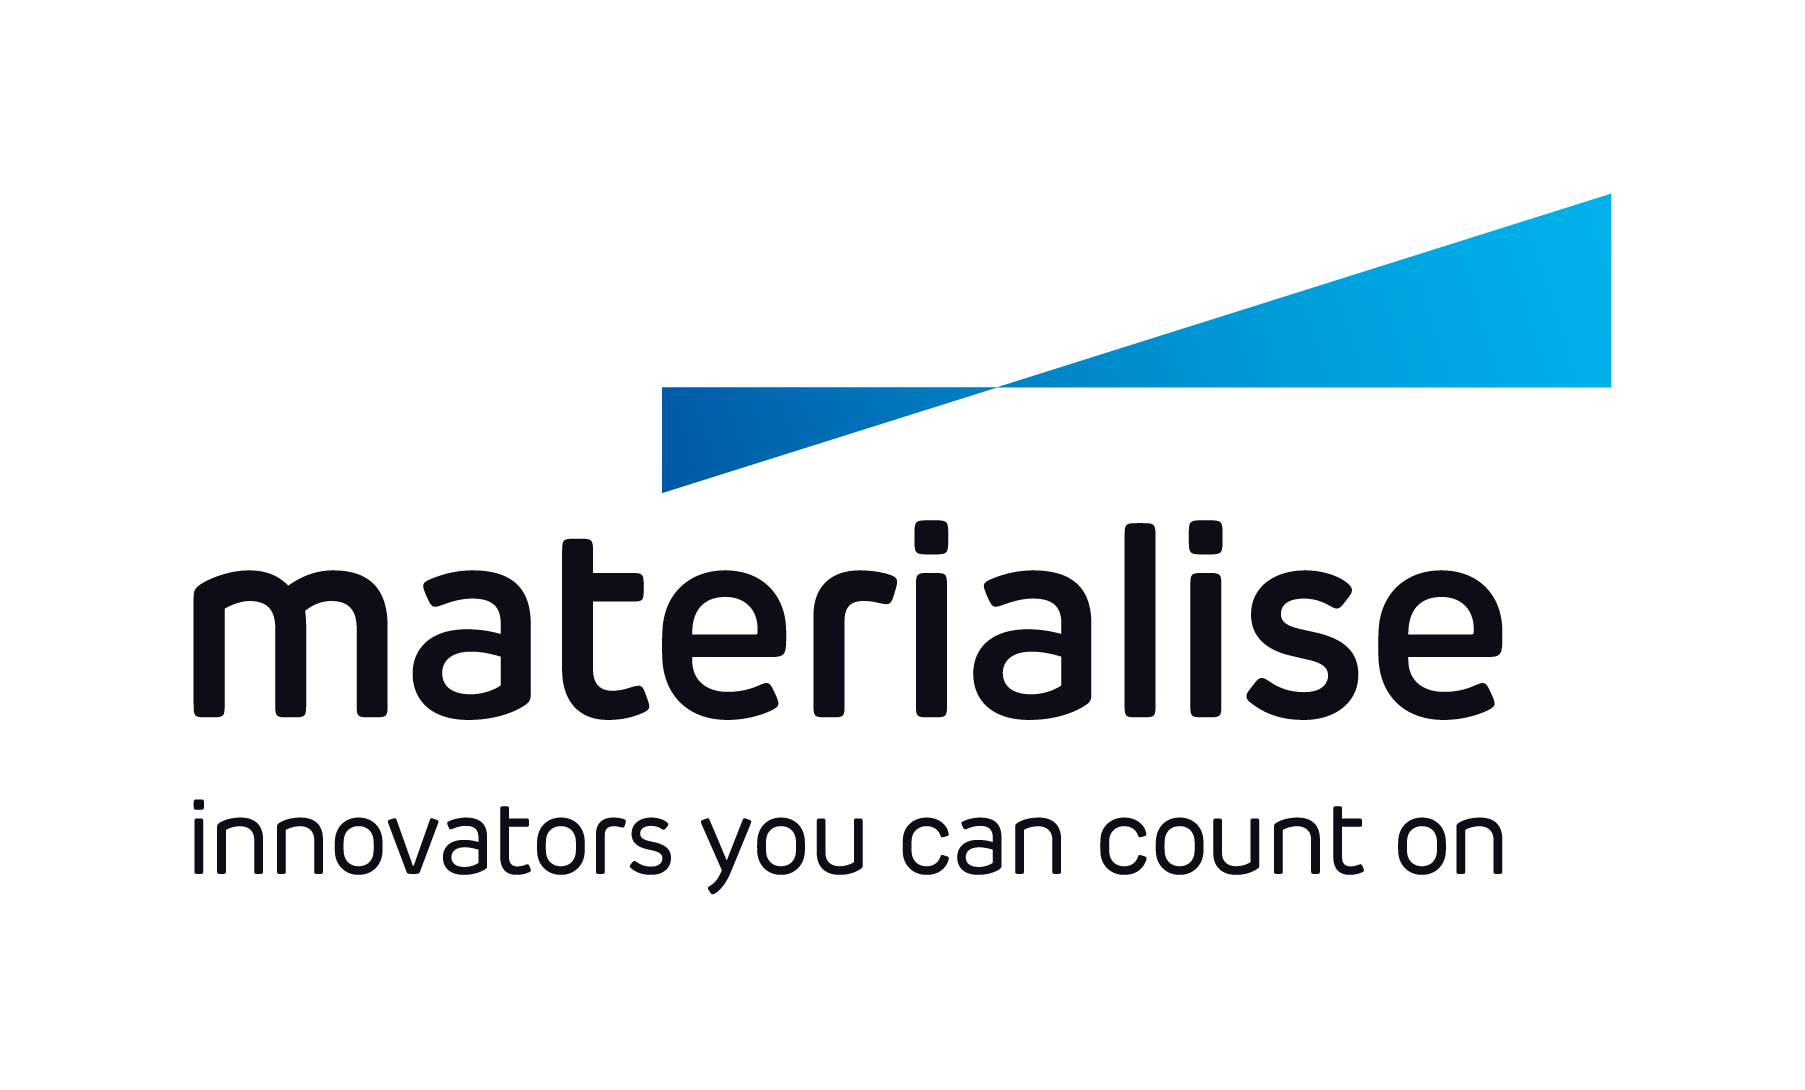  Materialise's logo 